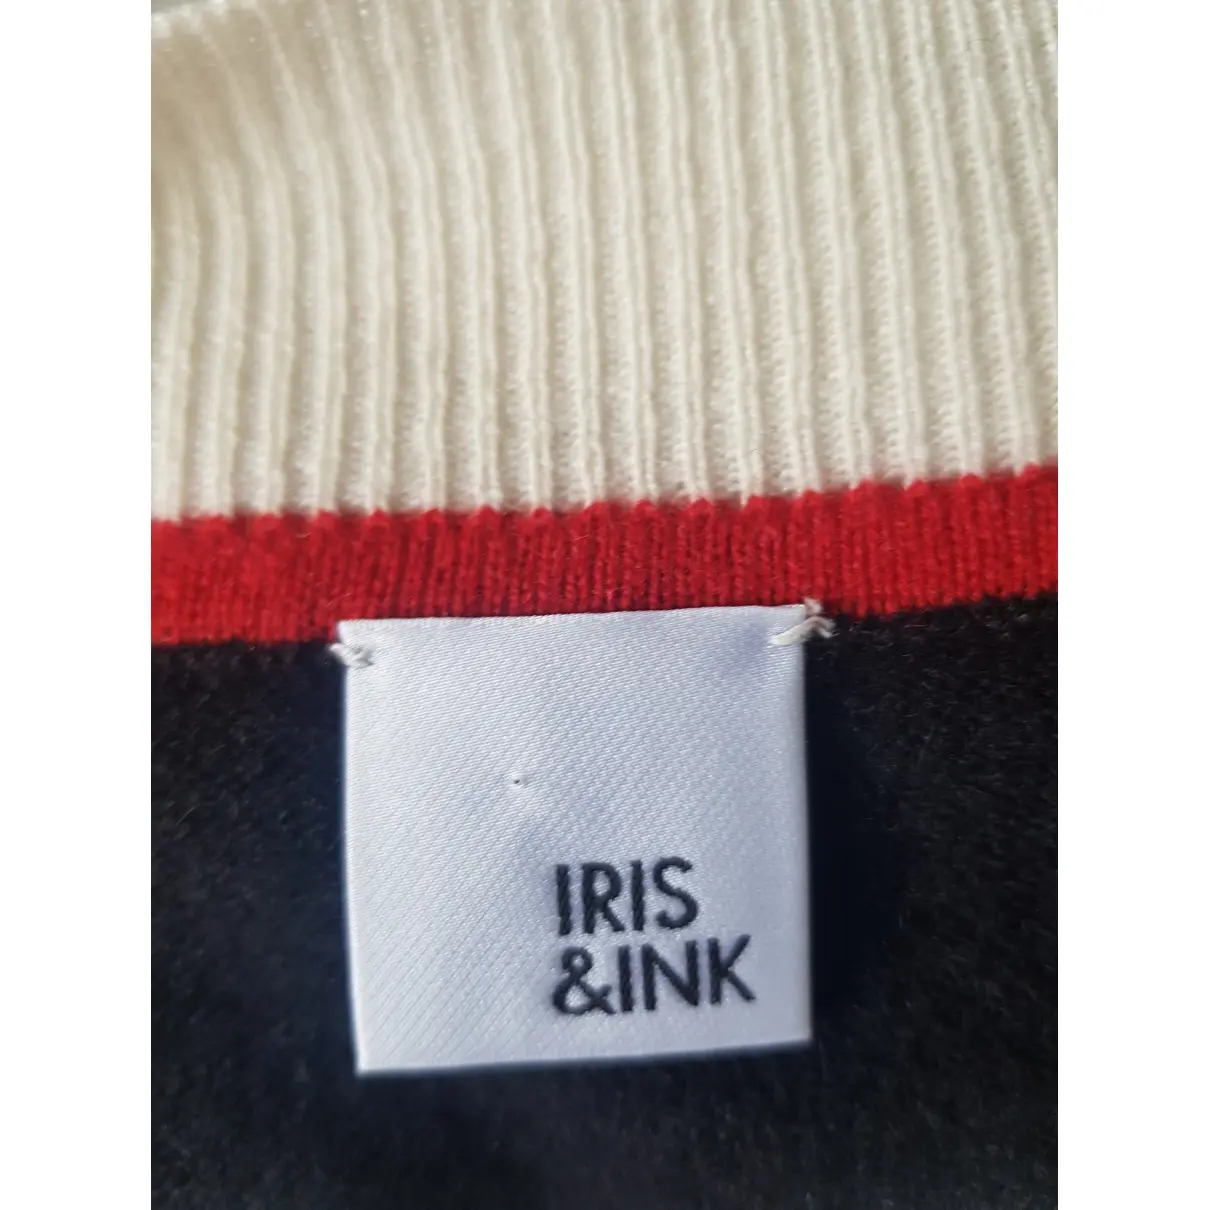 Buy Iris & Ink Cashmere knitwear online